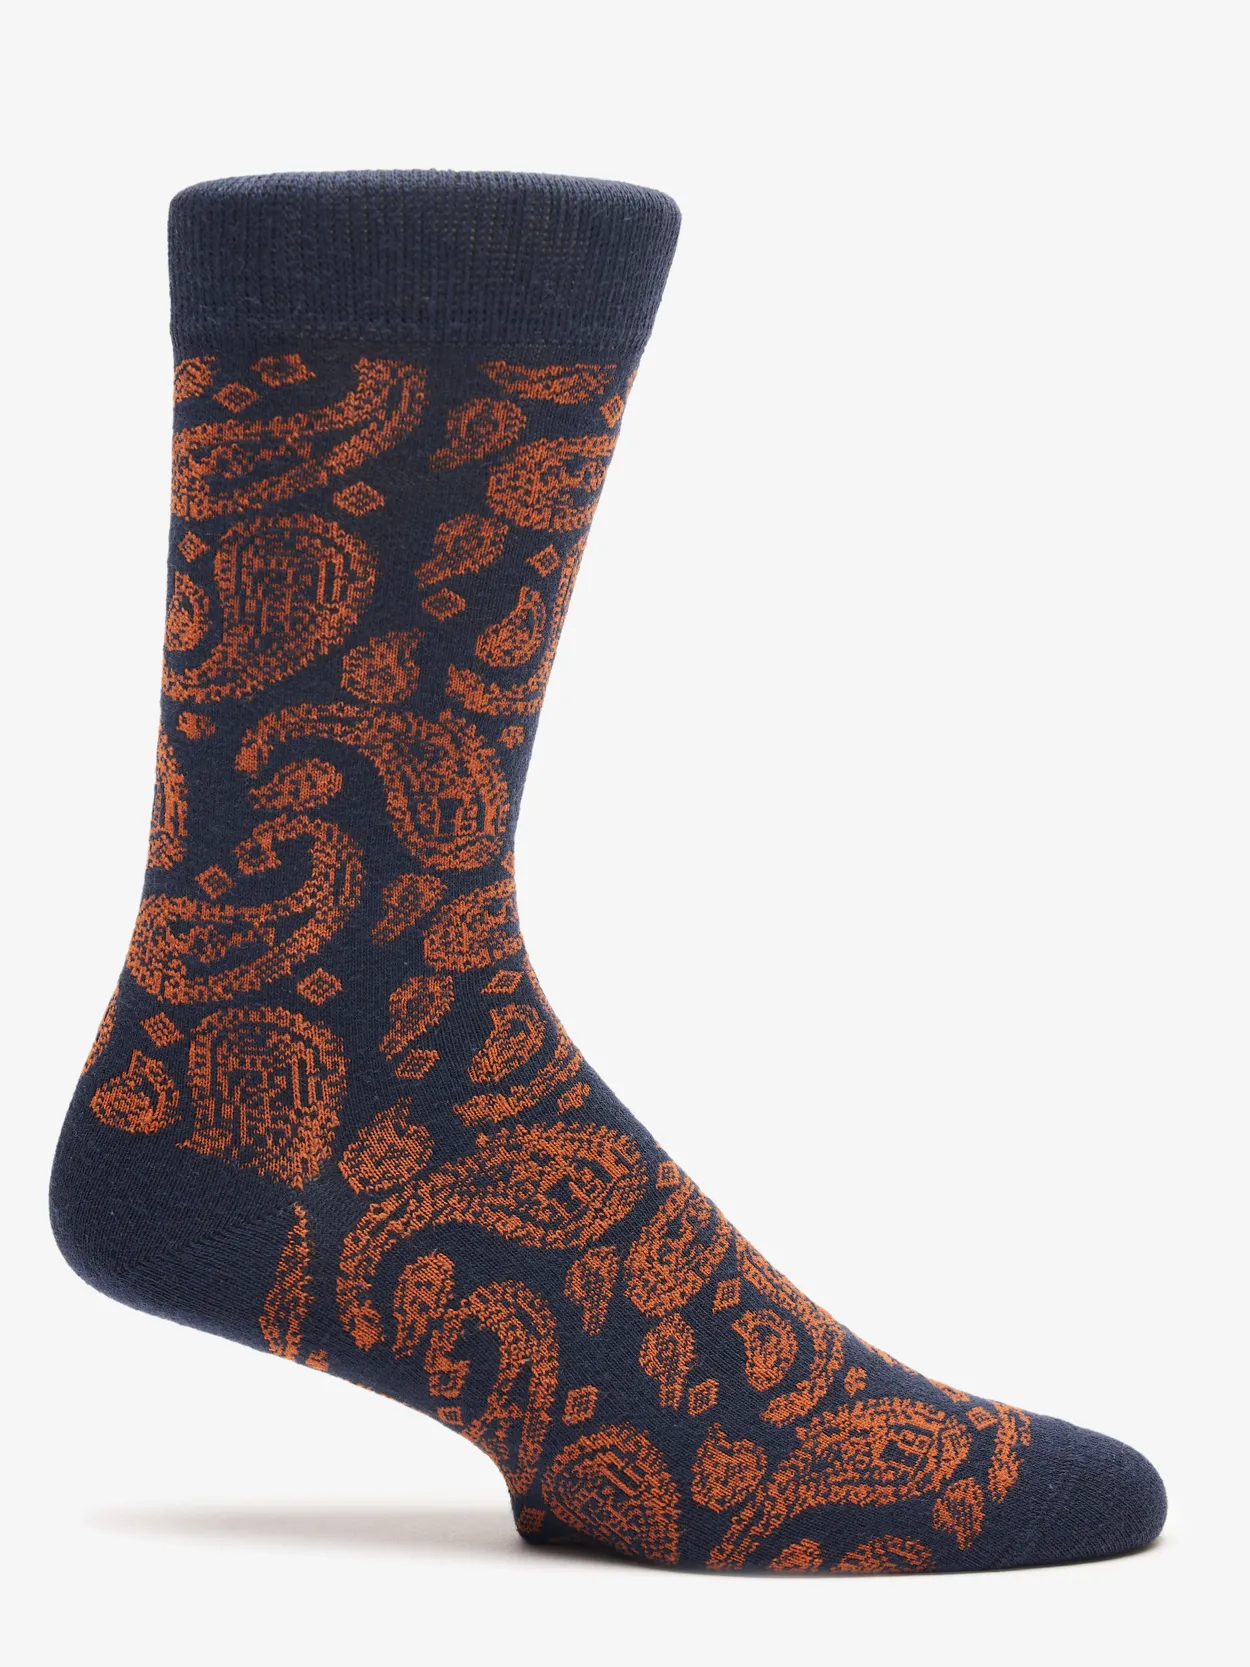 Navy & Orange Socks Harrow